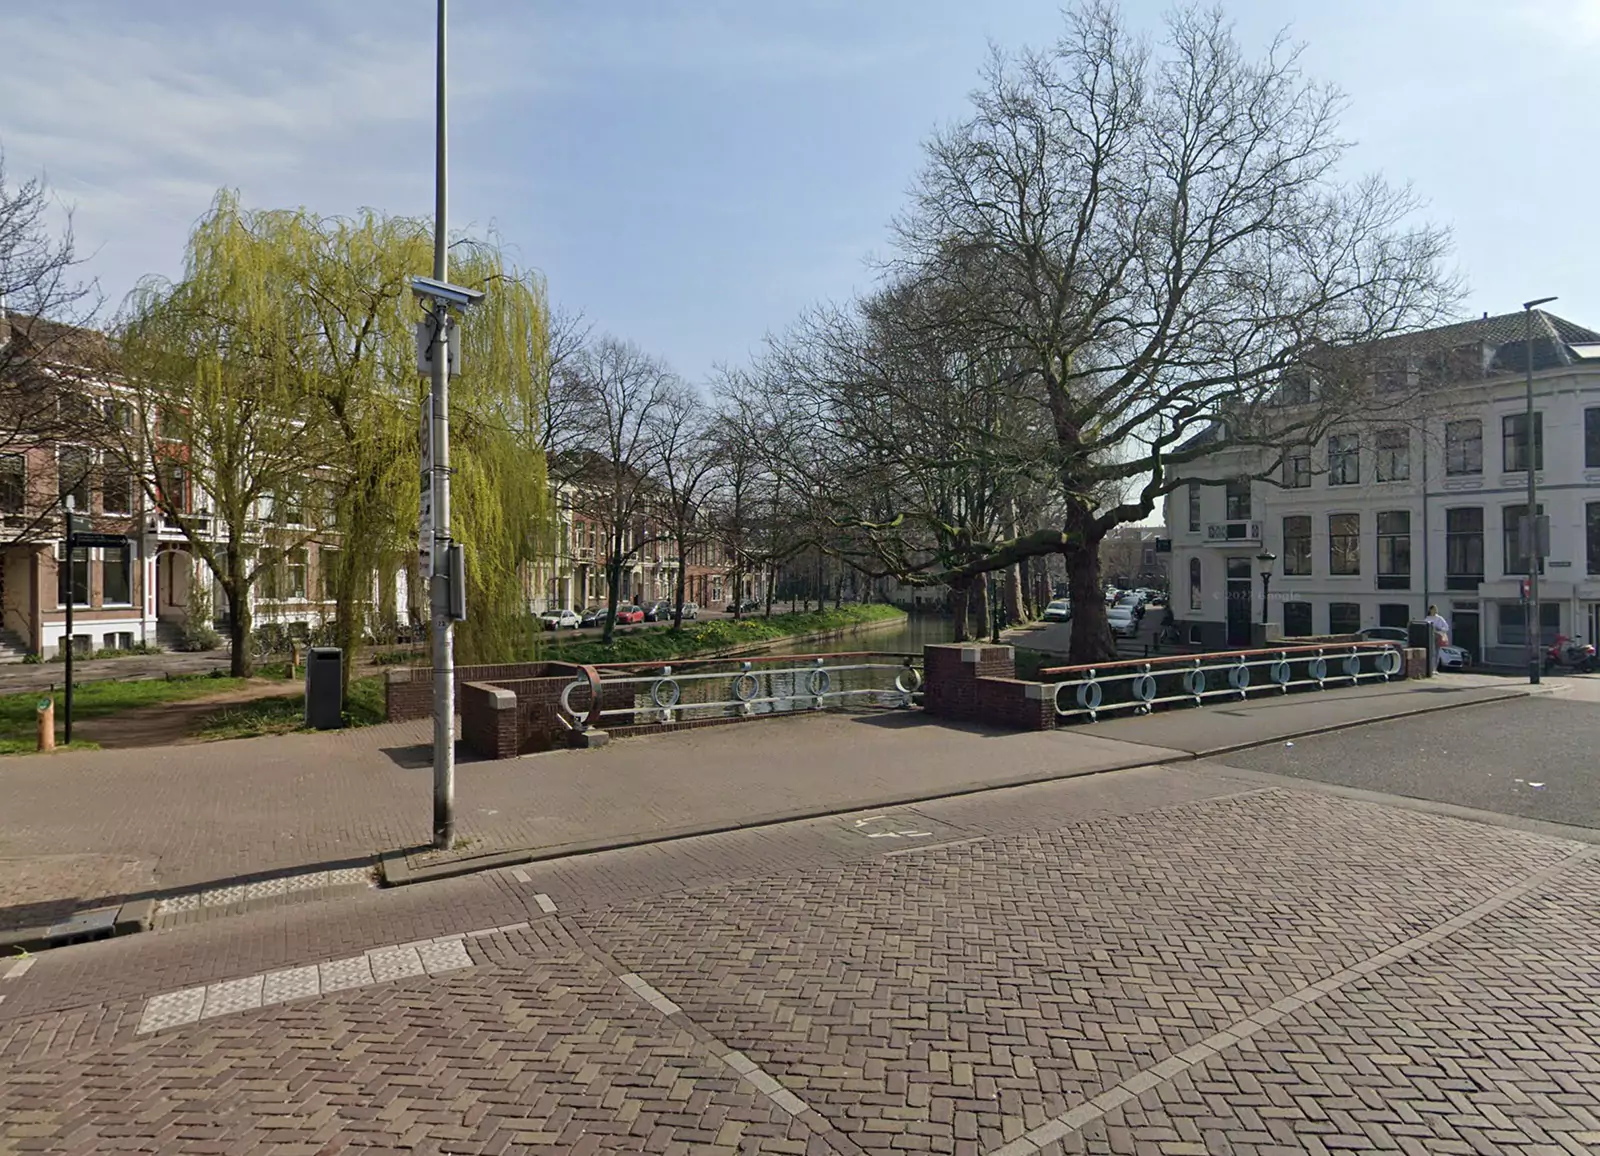 Vestiging Hypotheek House Utrecht - Hypotheekadvies Utrecht